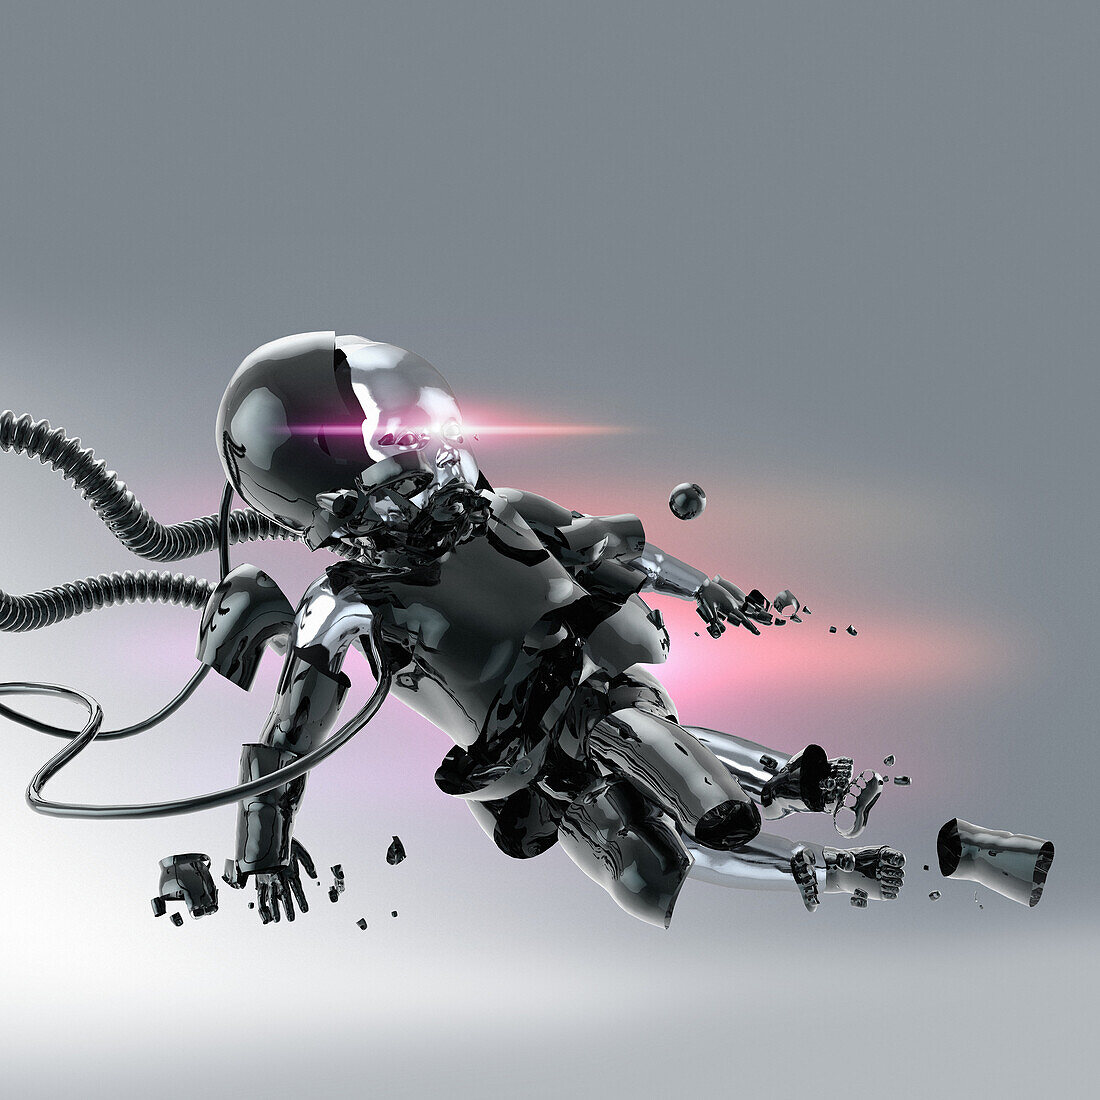 Robot being assembled, illustration